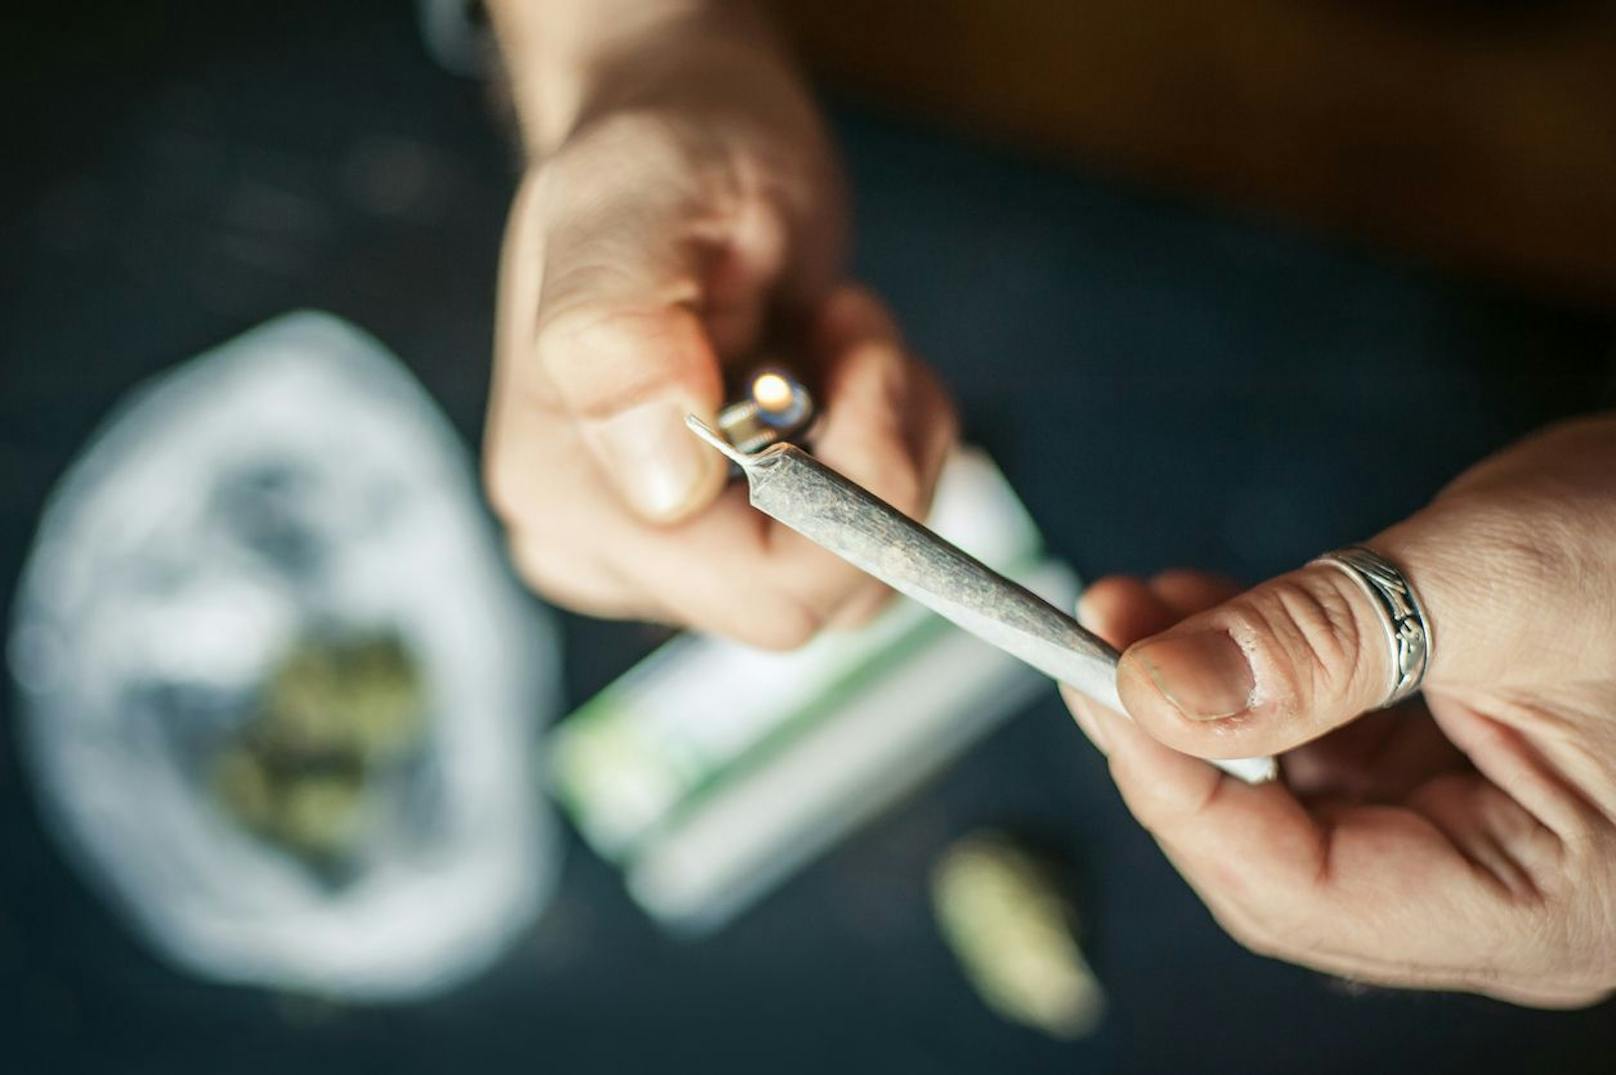 Cannabis-Geruch führte Polizei direkt zu Drogenparty